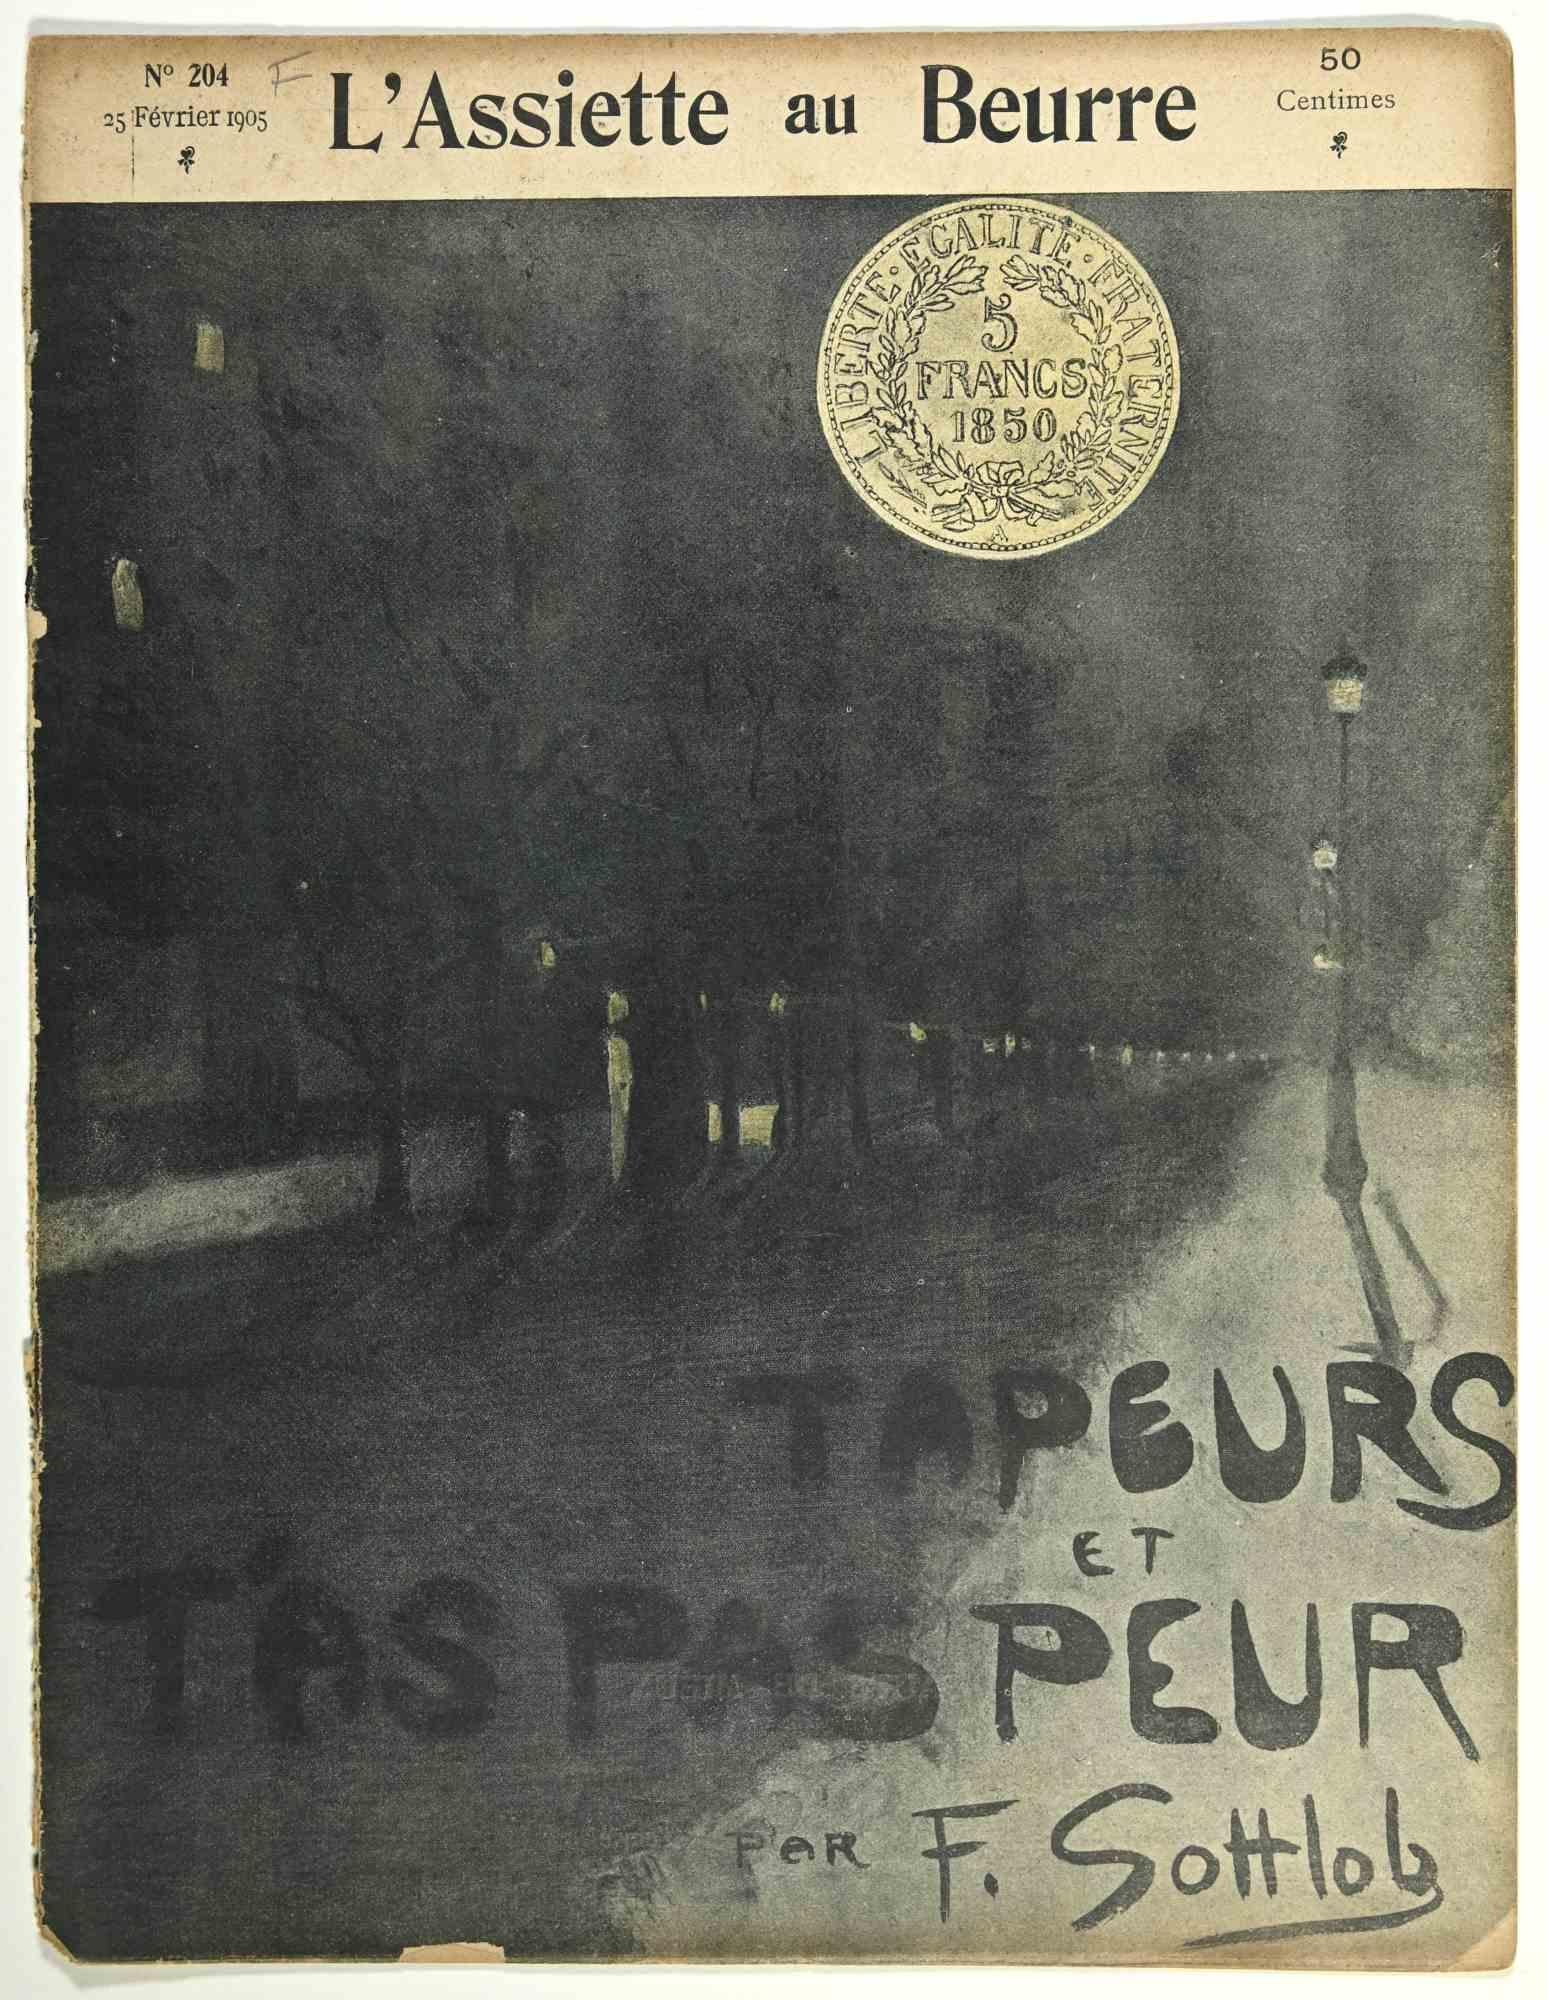 L'Assiette au Beurre  - Vintage Comic Magazine - 1905 - Print by Fernand Gottlob 